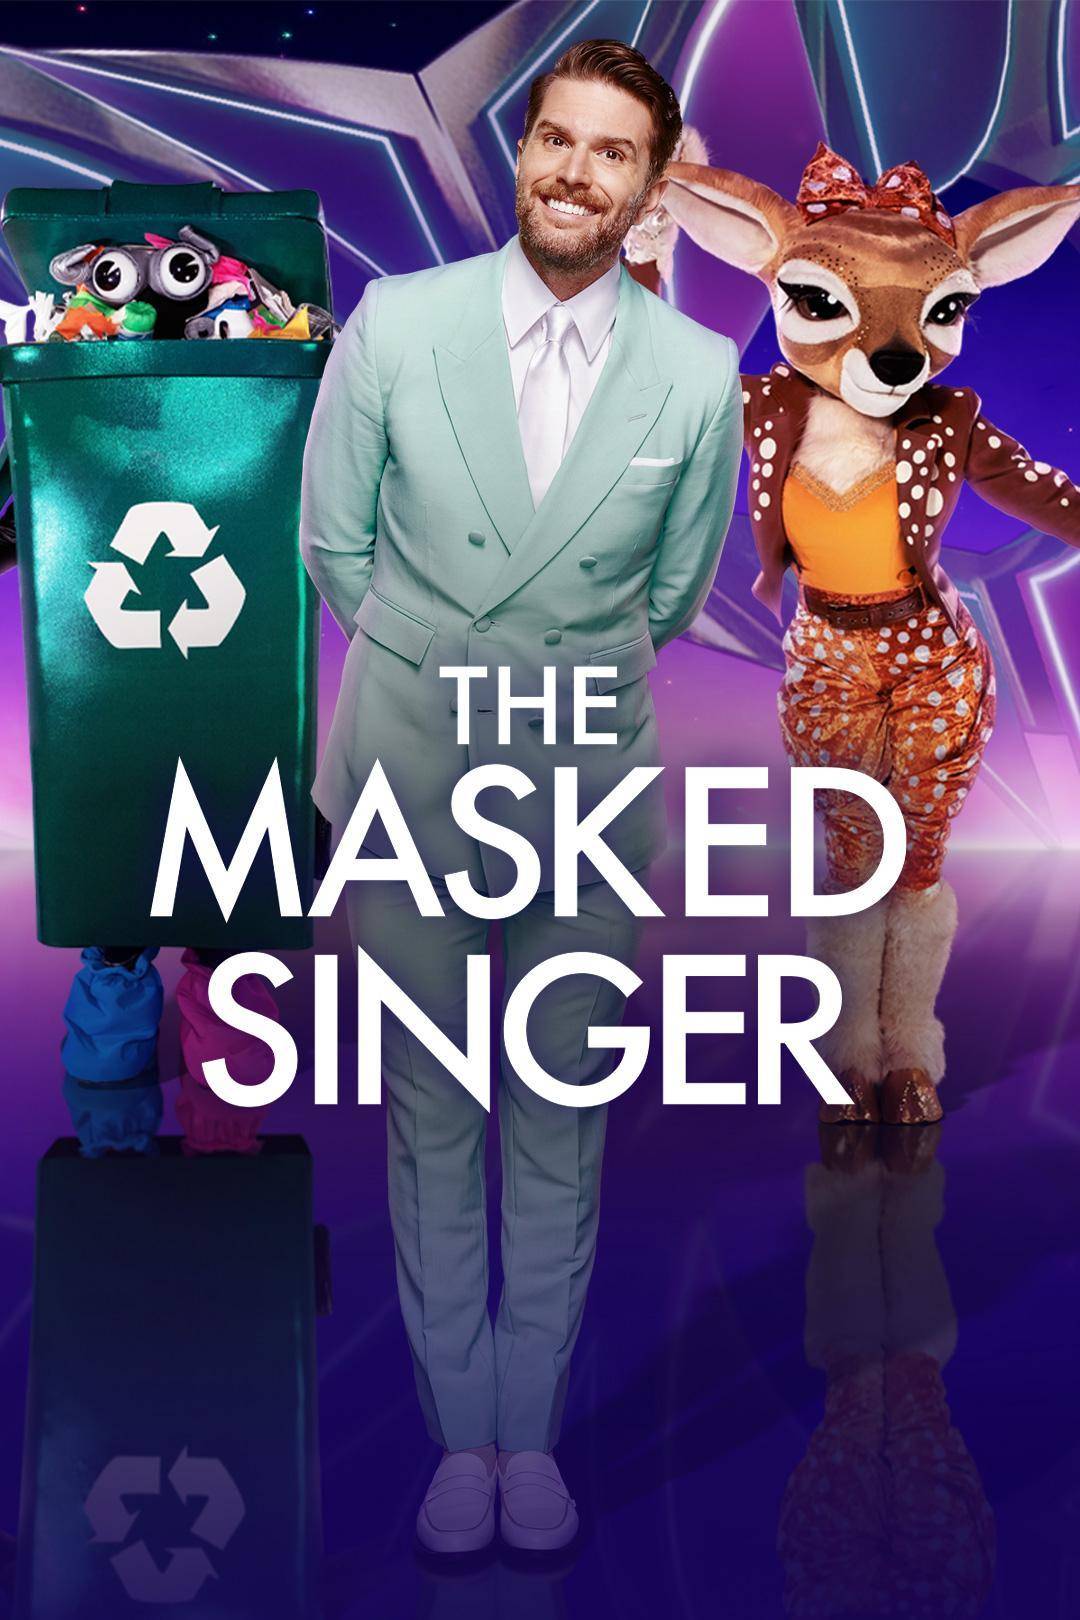 The Masked Singer UK S05E03 [1080p/720p] HDTV (x265/H264) 2bee7e8f440b504ca909736d76b48d32